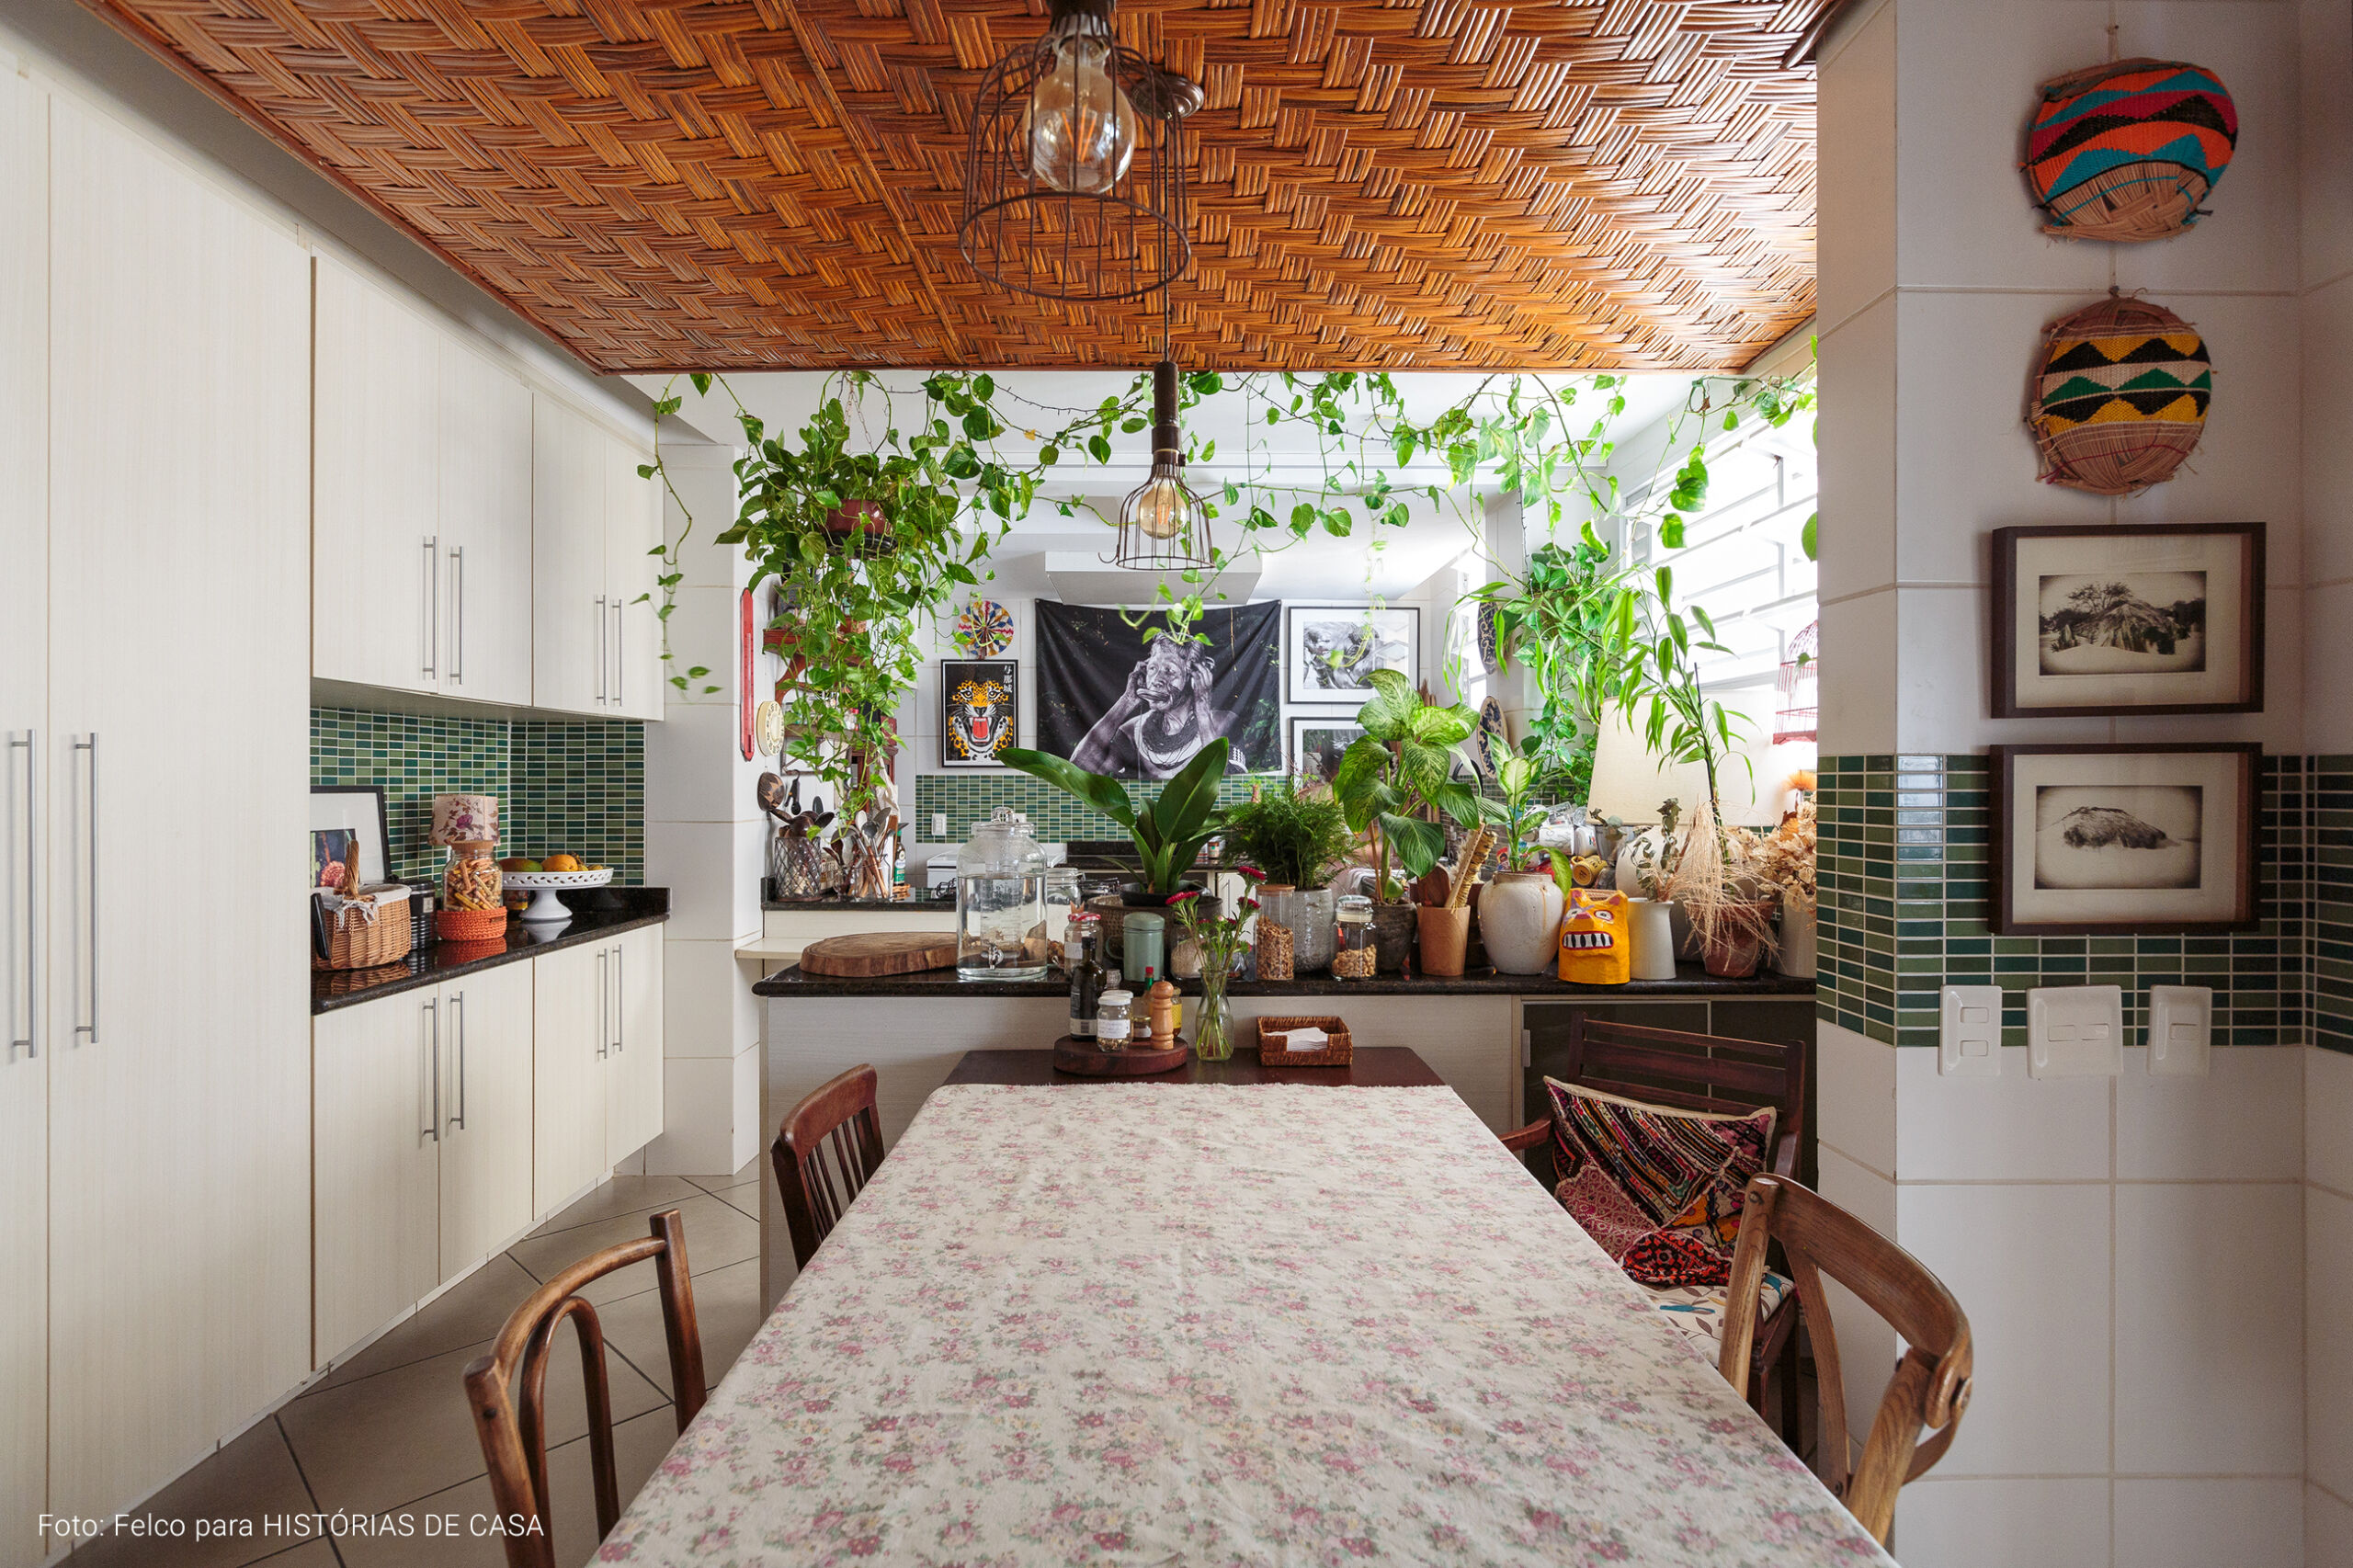 Apartamento no Rio de Janeiro de Gigi Barreto, com decoração cheia de plantas, quadros e pinturas nas paredes